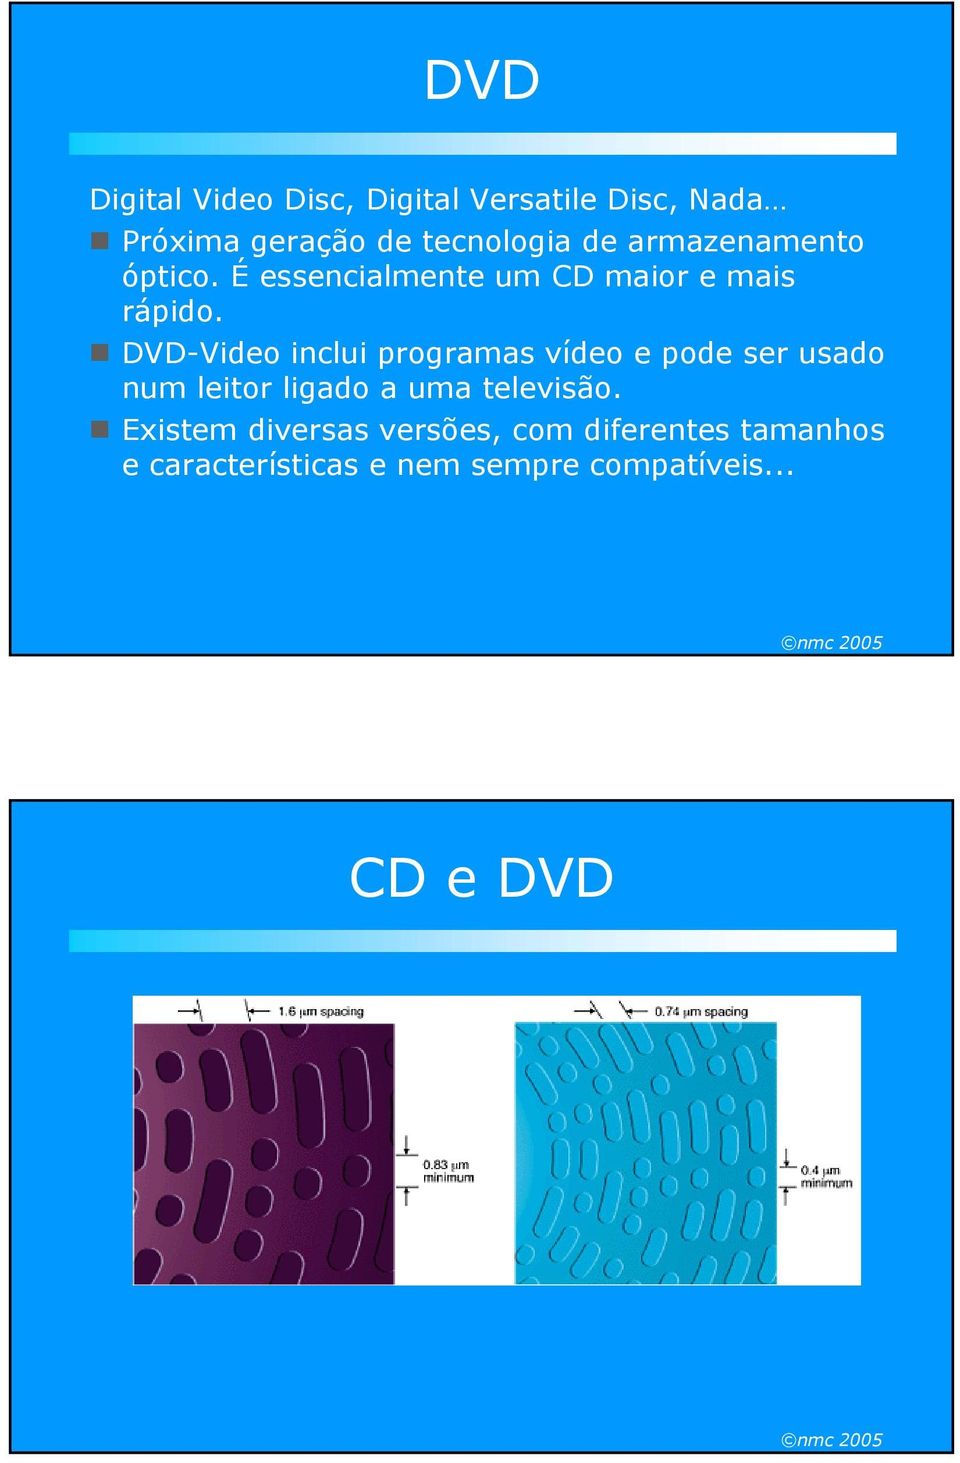 DVD-Video inclui programas vídeo e pode ser usado num leitor ligado a uma televisão.